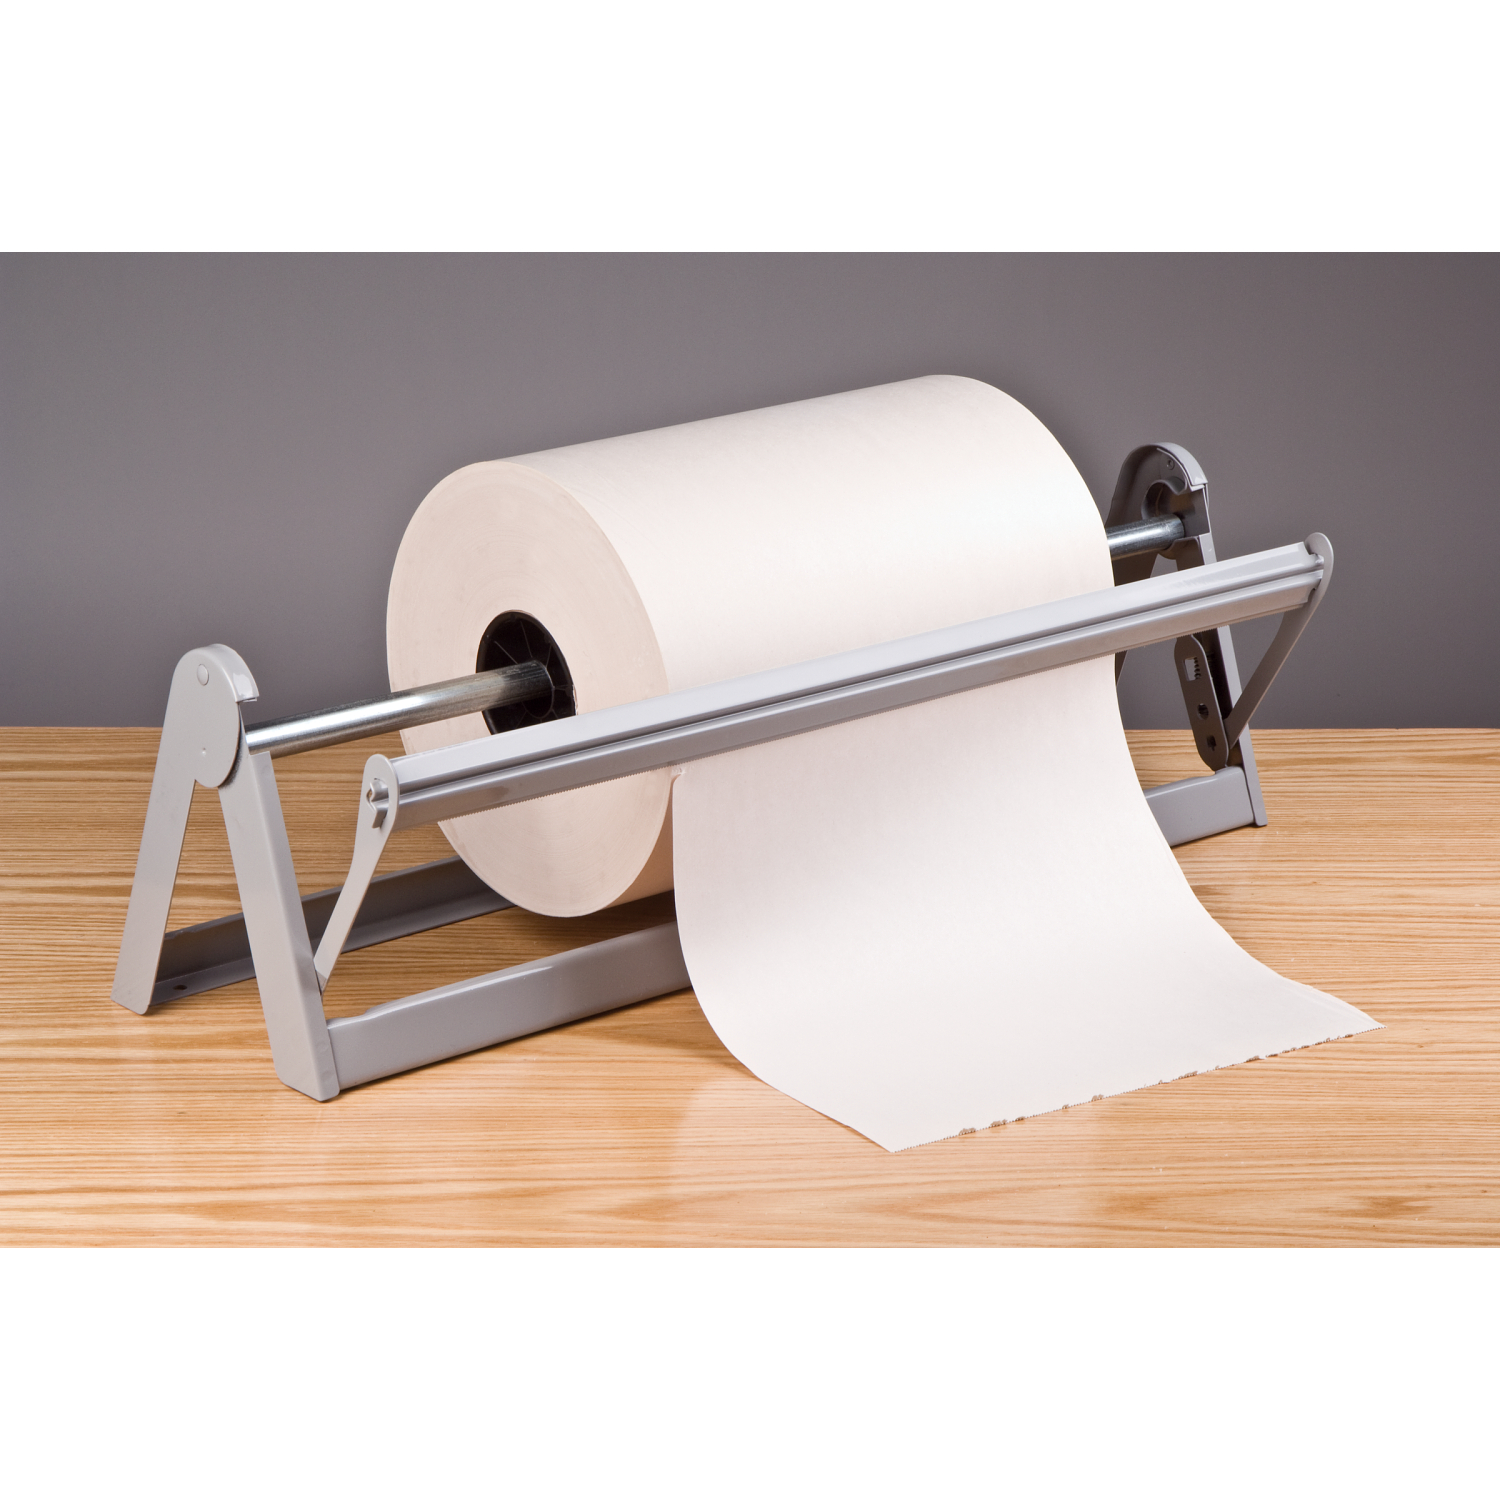 Paper Cutters, Paper Roll Cutters, Butcher Paper Dispensers in Stock - ULINE